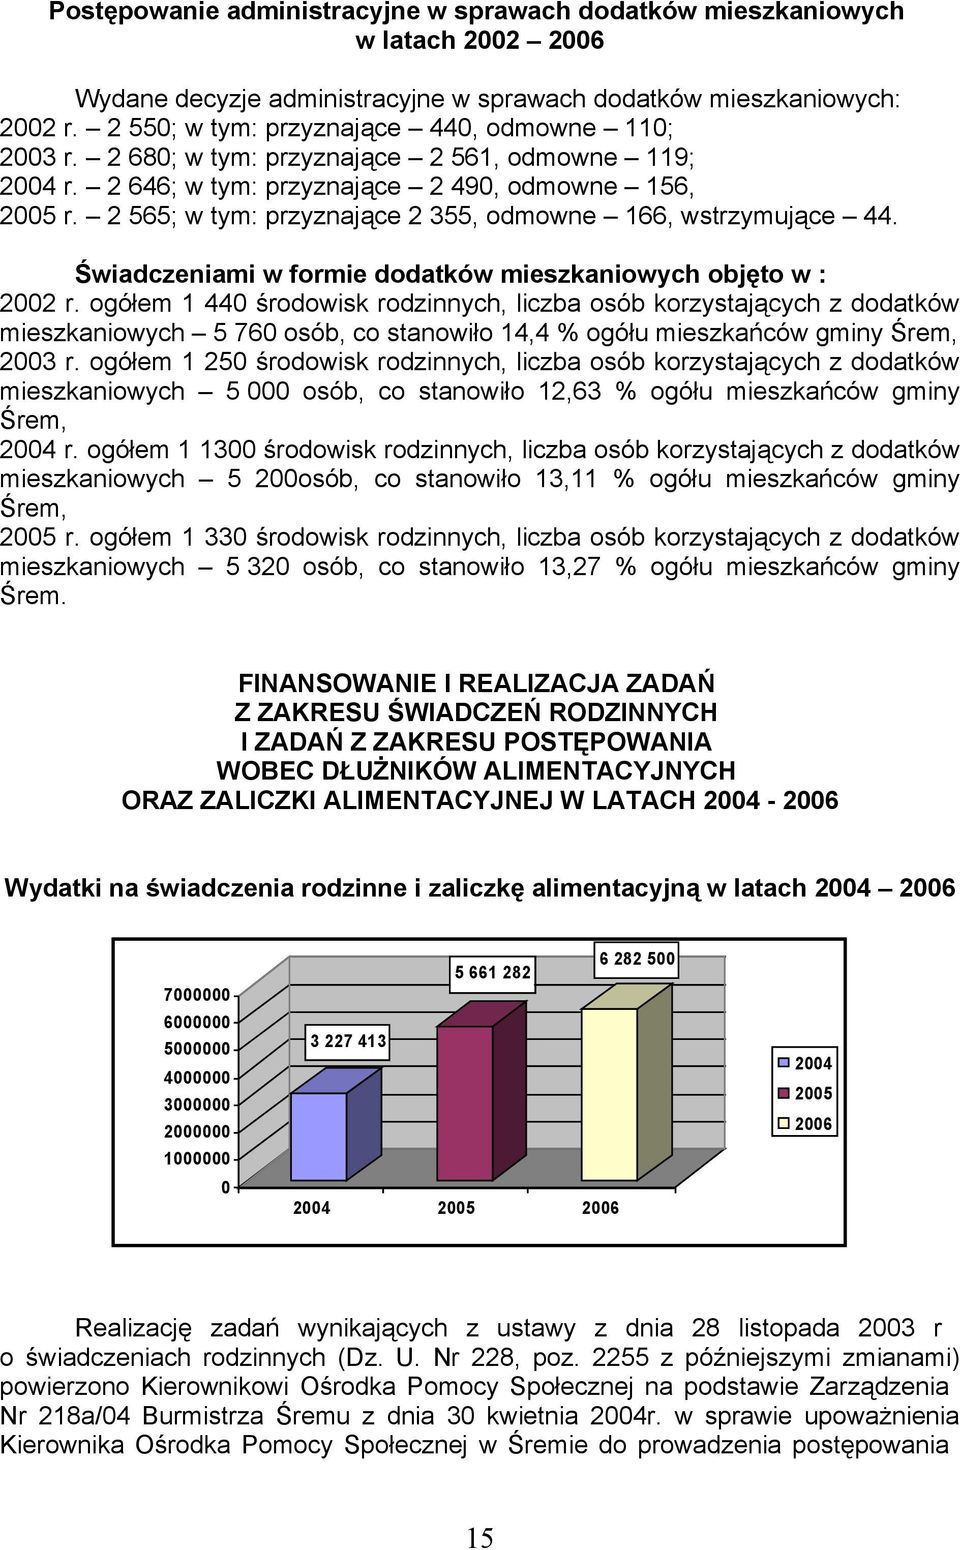 Śiadczeniami formie dodatkó mieszkanioych objęto : 2002 r. ogółem 1 440 środoisk nych, liczba korzystających z dodatkó mieszkanioych 5 760, co stanoiło 14,4 % ogółu mieszkańcó gminy Śrem, 2003 r.